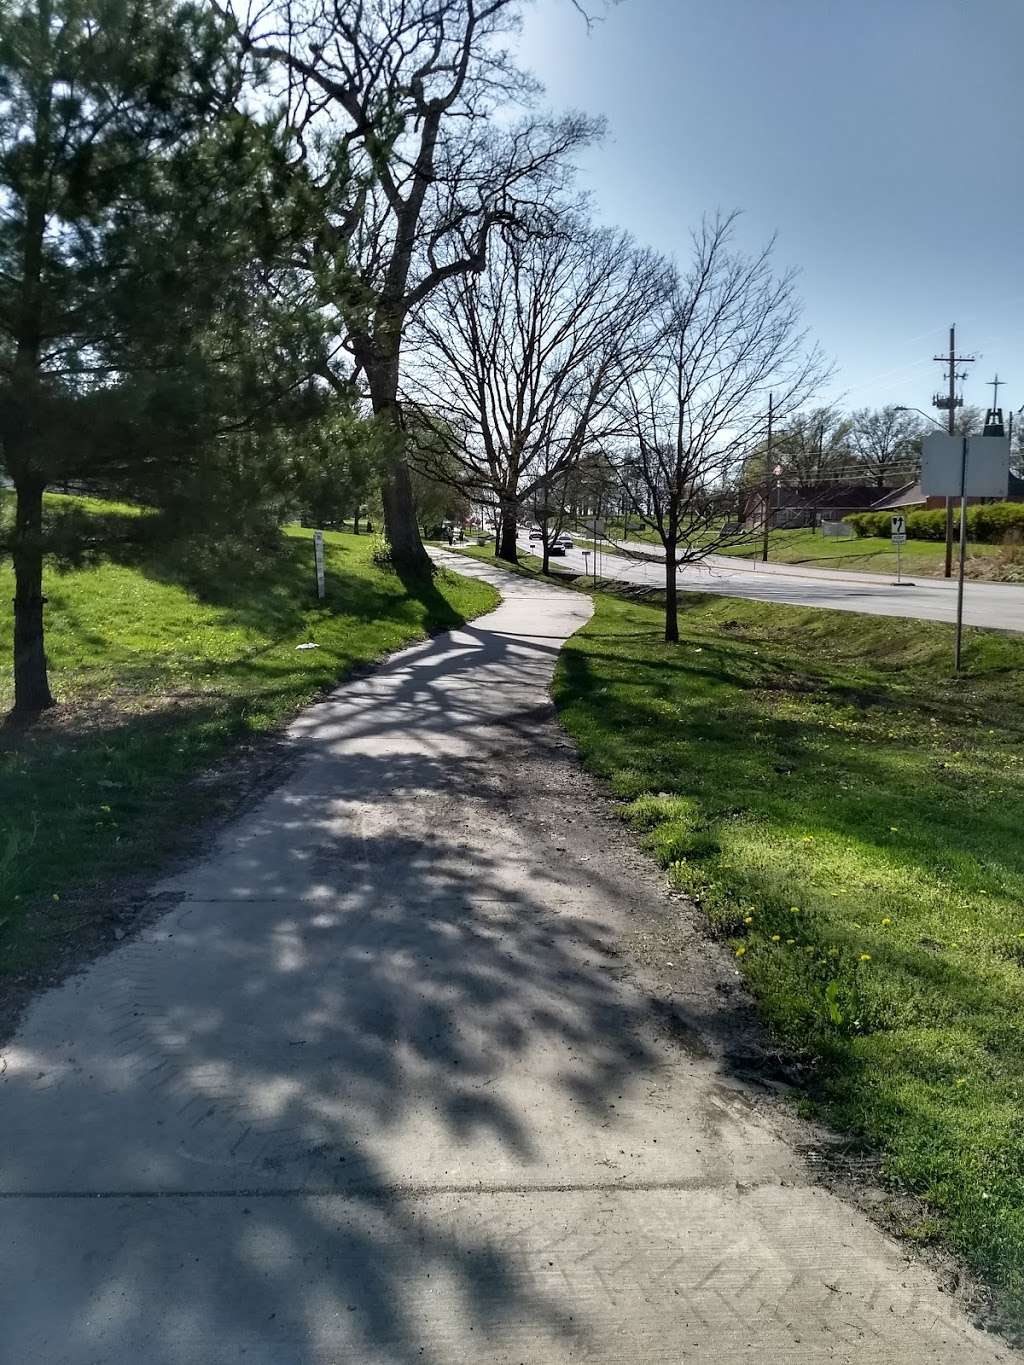 Vivion Bike/Hike Trail | Vivion Trail, Kansas City, MO 64116